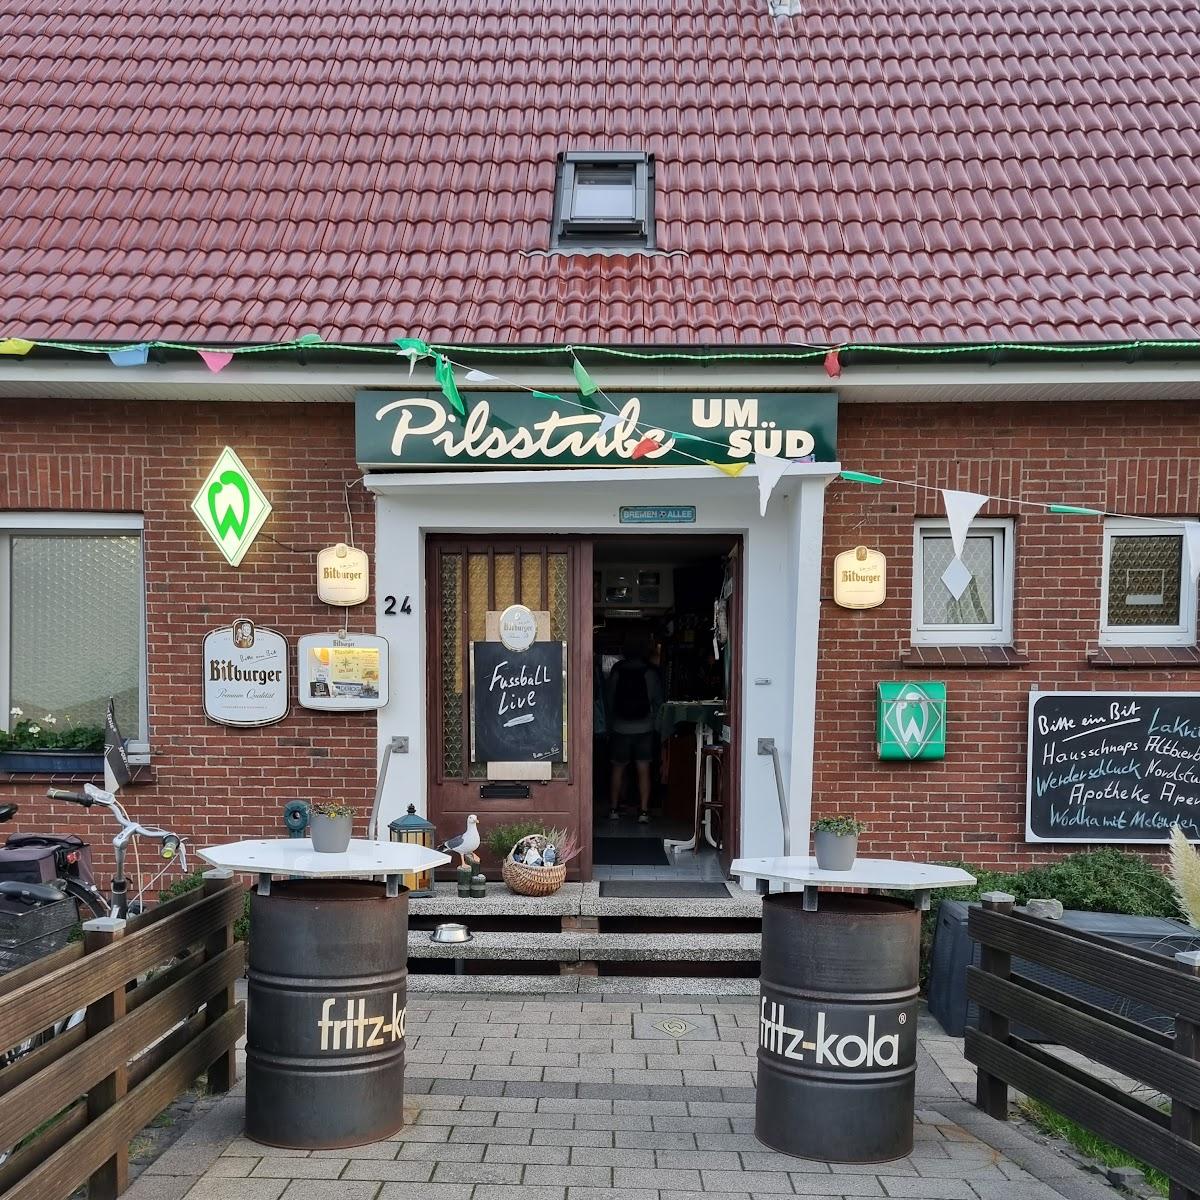 Restaurant "pilsstube um süd" in Norderney